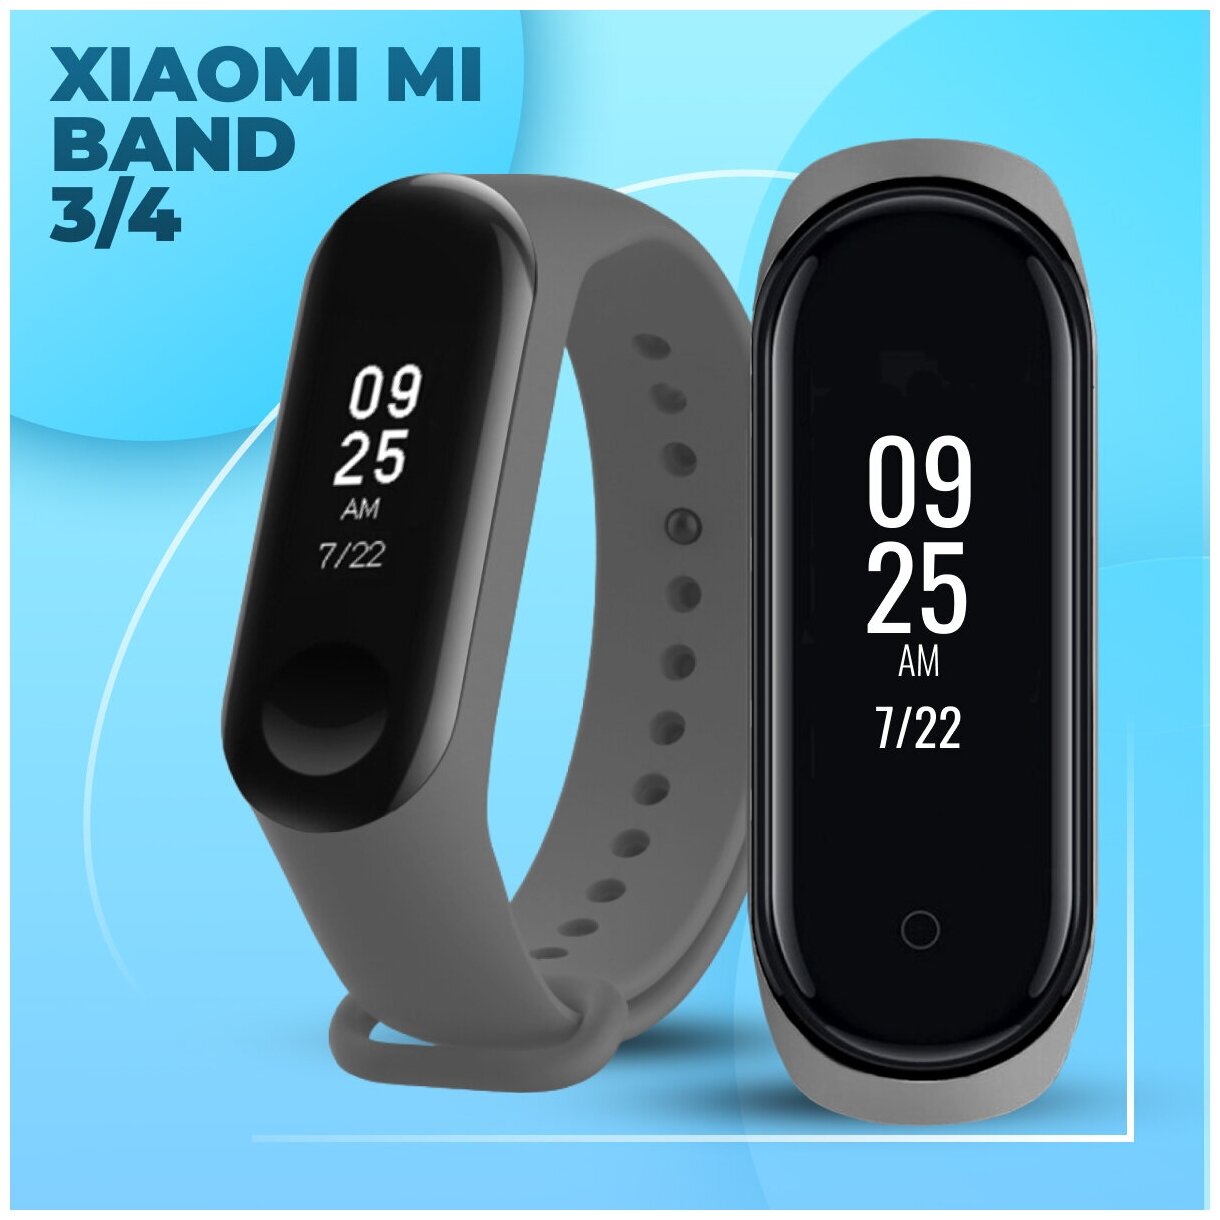 LS / Силиконовый ремешок для фитнес браслета Xiaomi Mi Band 3 и Mi Band 4 / Сменный браслет для смарт часов Сяоми Ми Бэнд 3 и Ми Бэнд 4 (Серый)